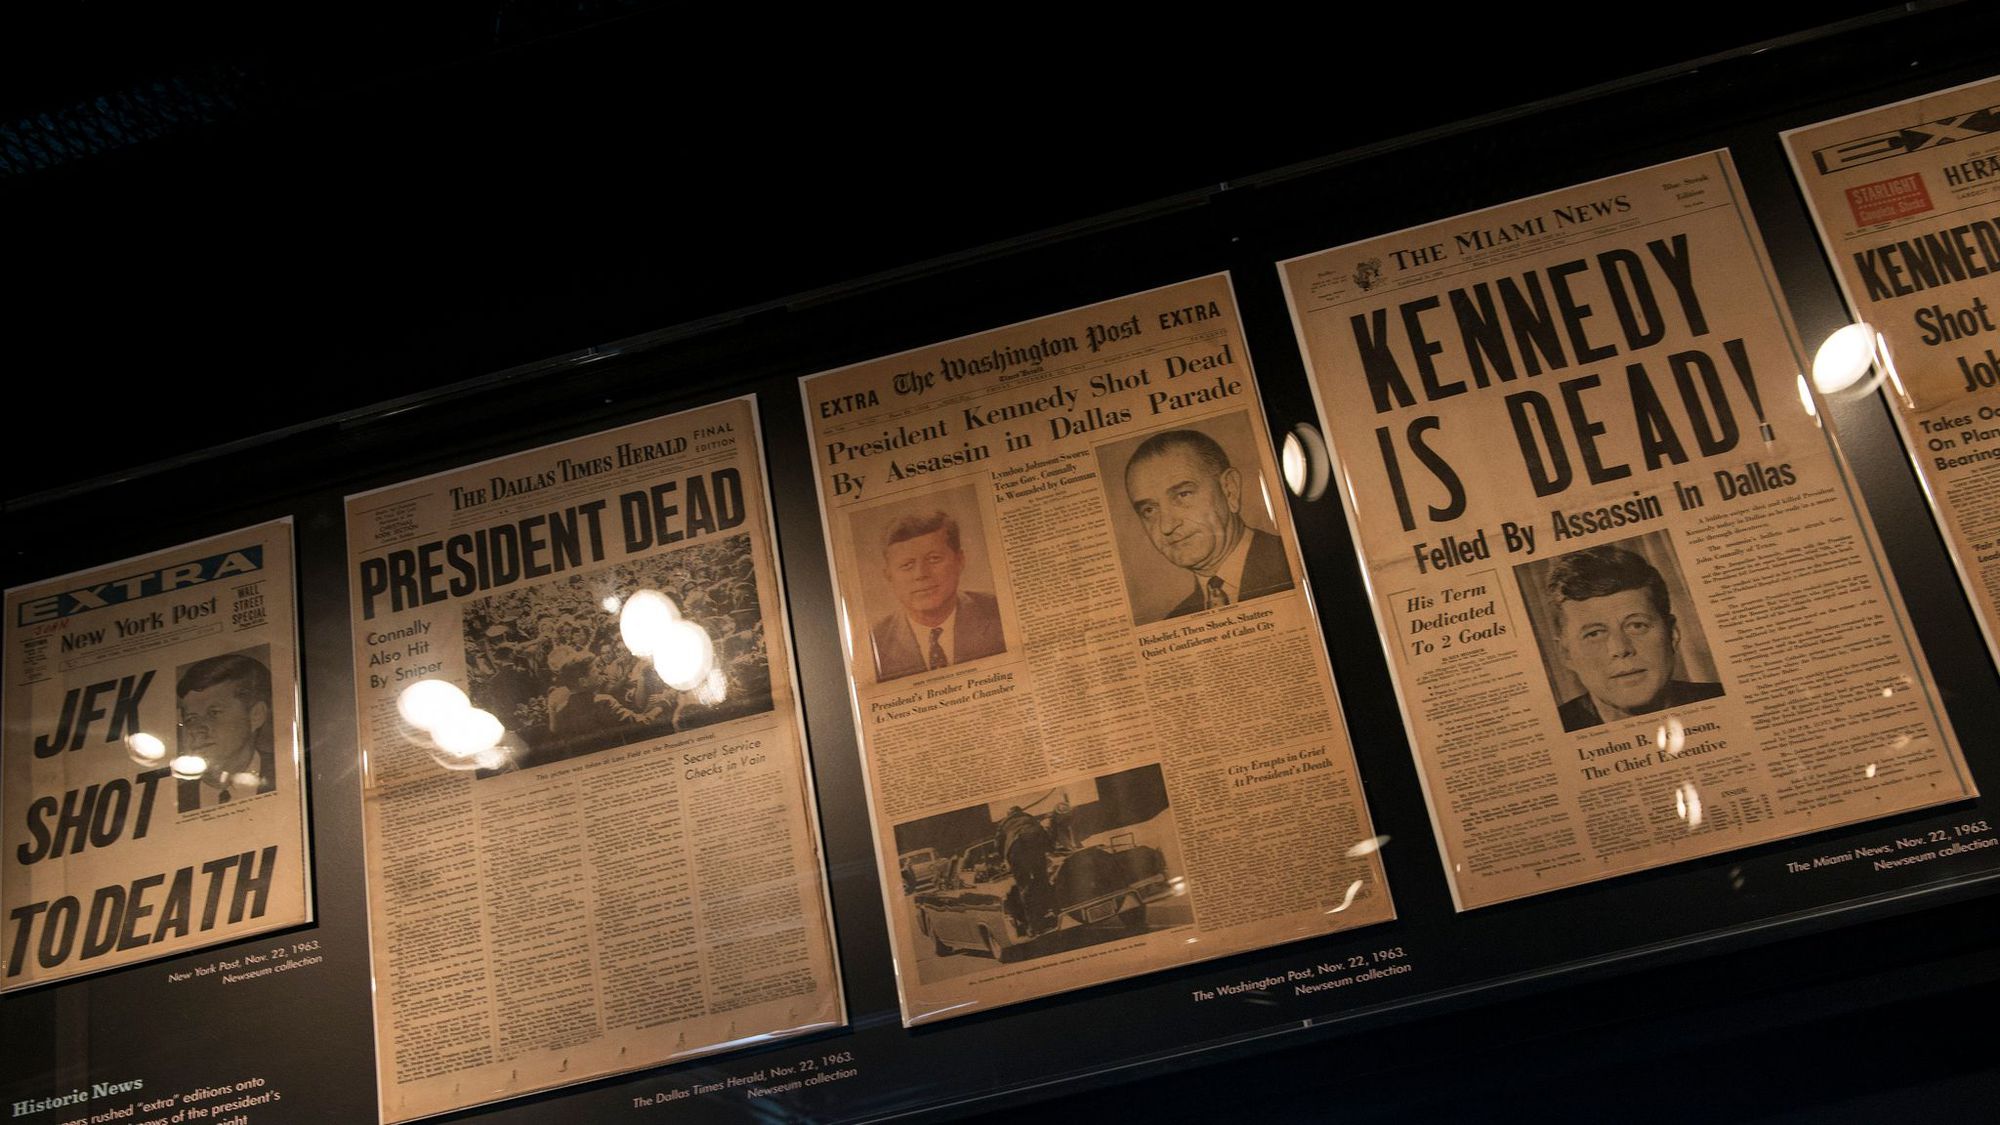 Du fracassant dans les dossiers Kennedy? Peu probable, selon les experts - L'Express